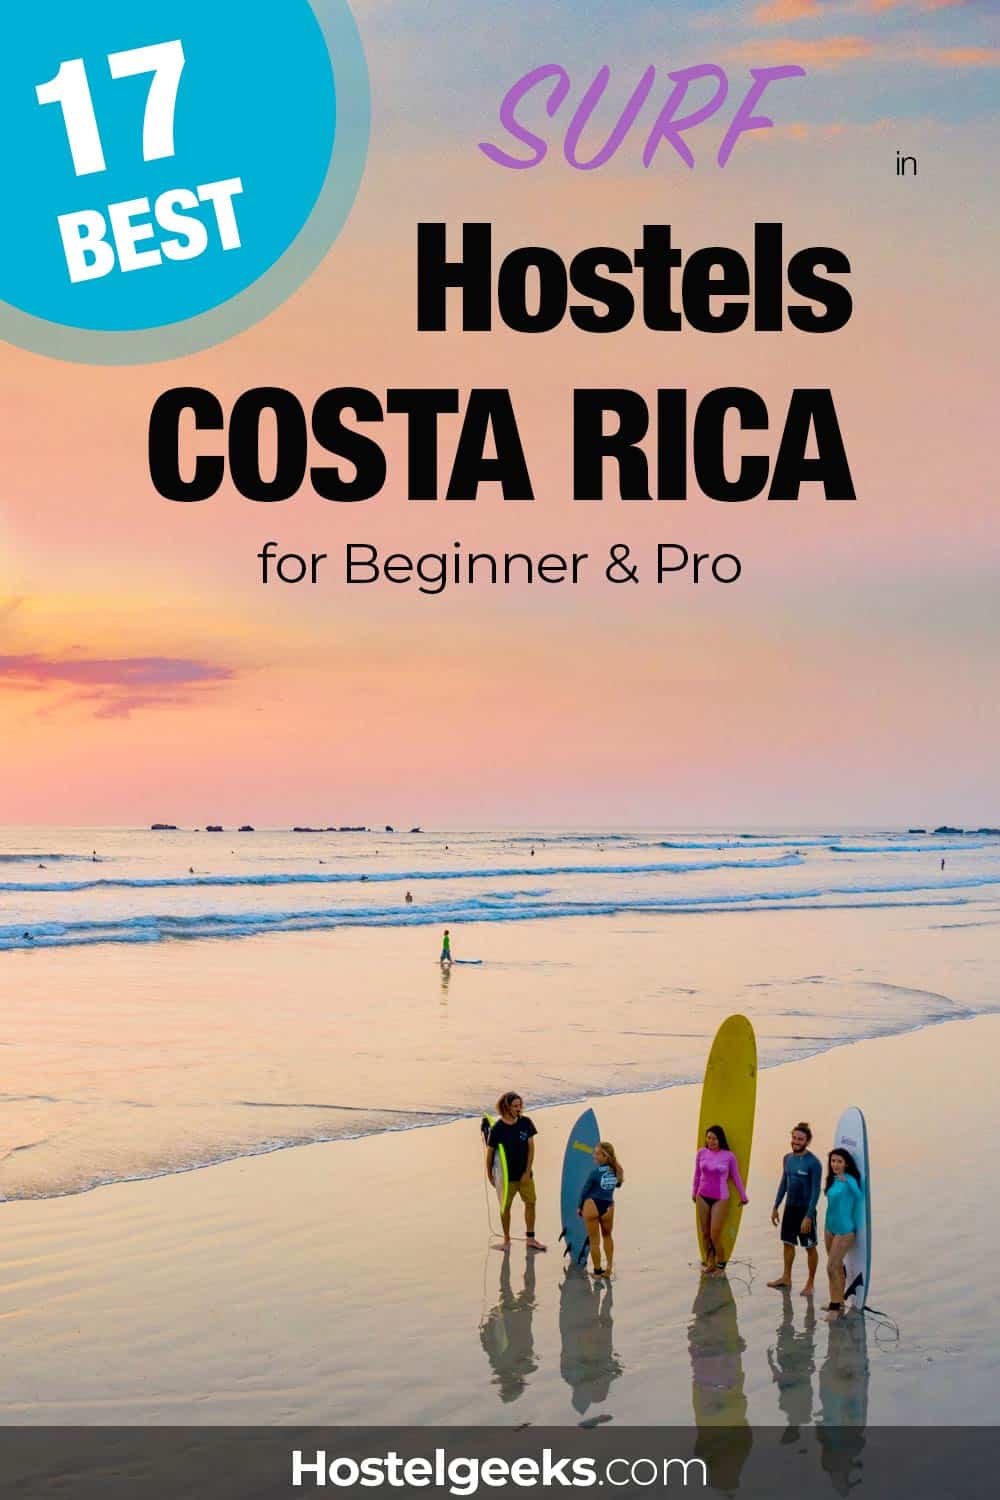 Best Hostels in Costa Rica by Hostelgeeks